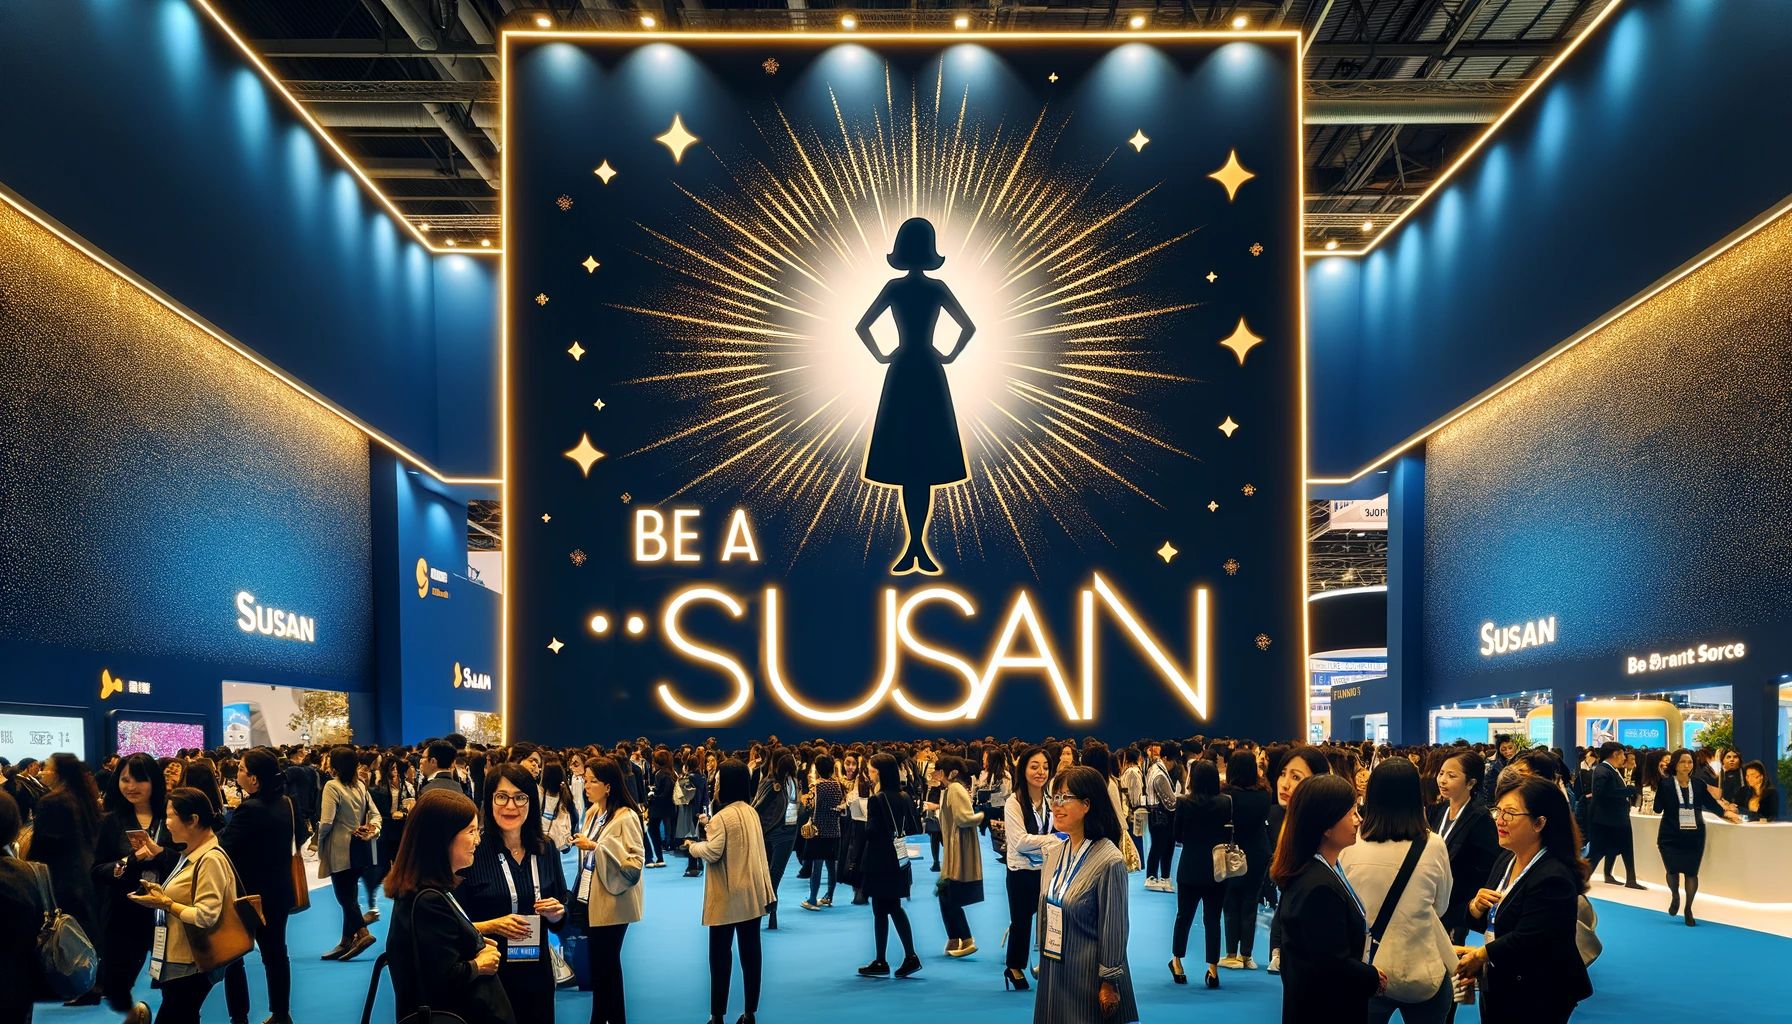 Be a Susan